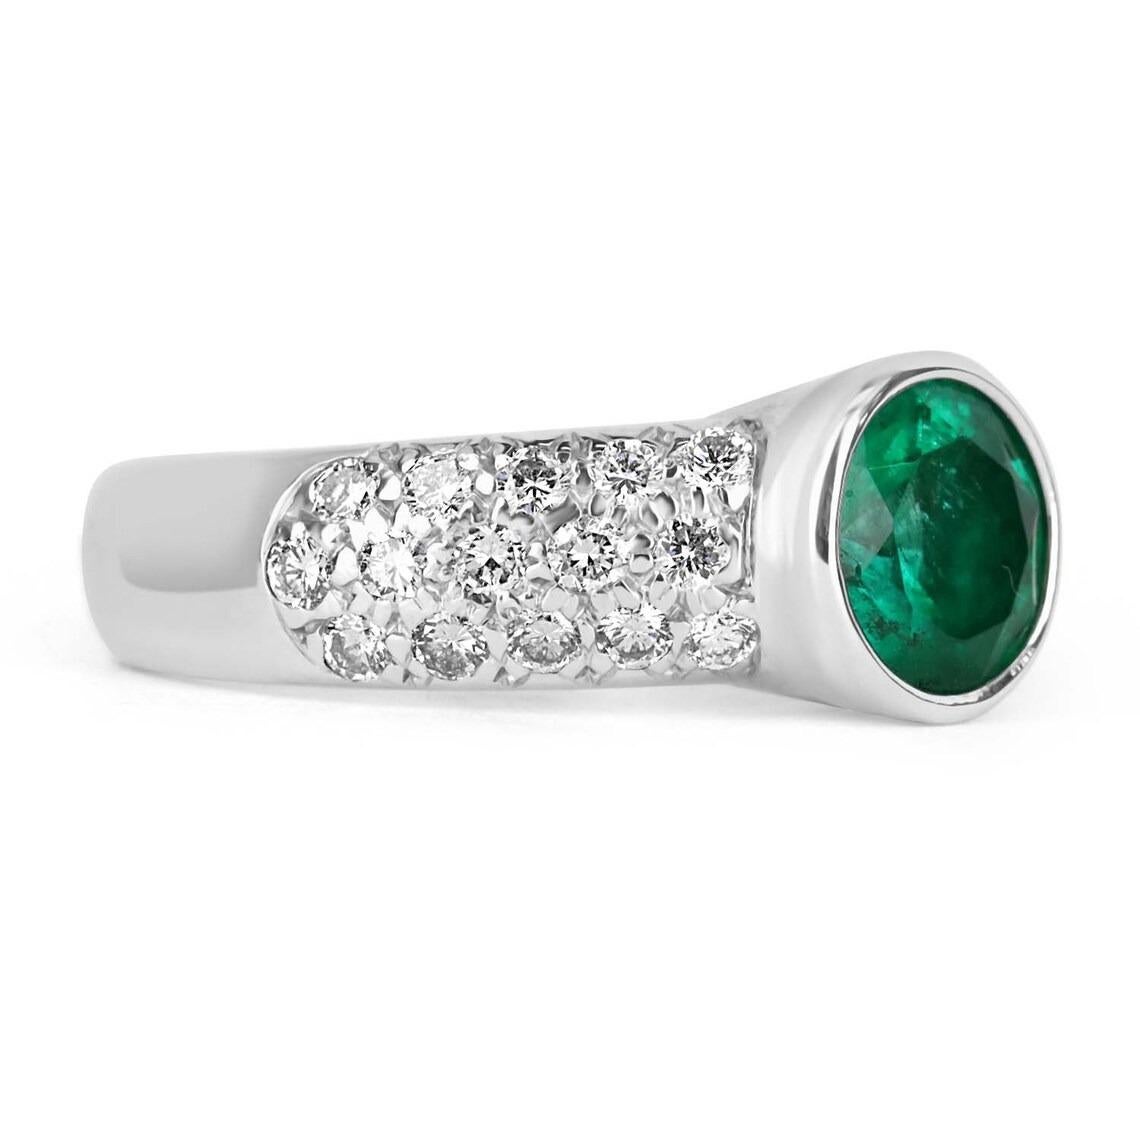 Hier ist ein atemberaubender Ring mit Smaragd und Diamanten zu sehen. Der Mittelstein trägt 1,74 Karat reiner grüner kolumbianischer Smaragdschönheit. Dieser natürliche Edelstein ist in eine Lünette gefasst und hat eine wunderschöne, leuchtend grüne